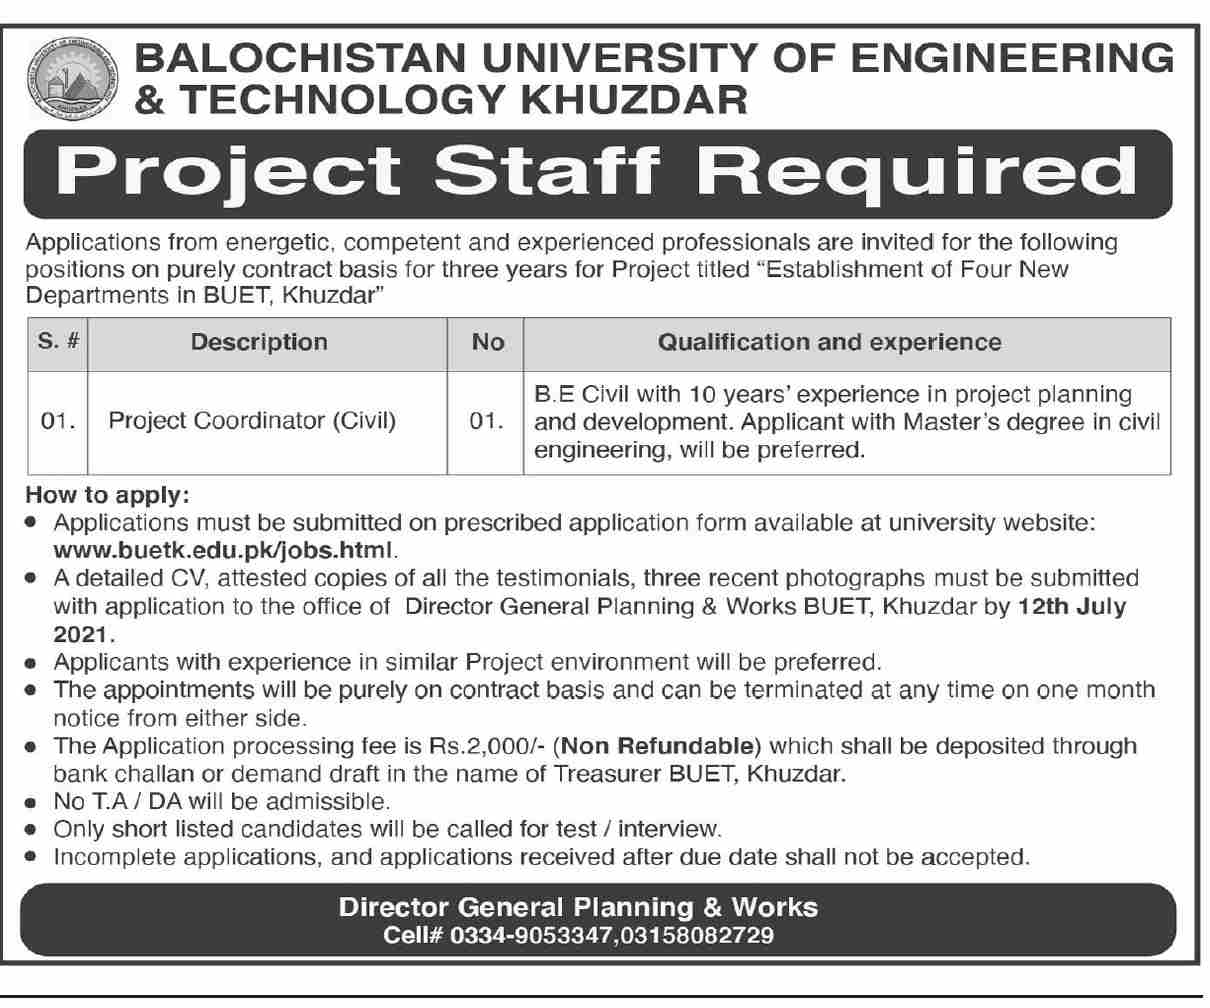 www.buetk.edu.pk Jobs 2021 - Balochistan University of Engineering & Technology (BUET) Jobs 2021 in Pakistan